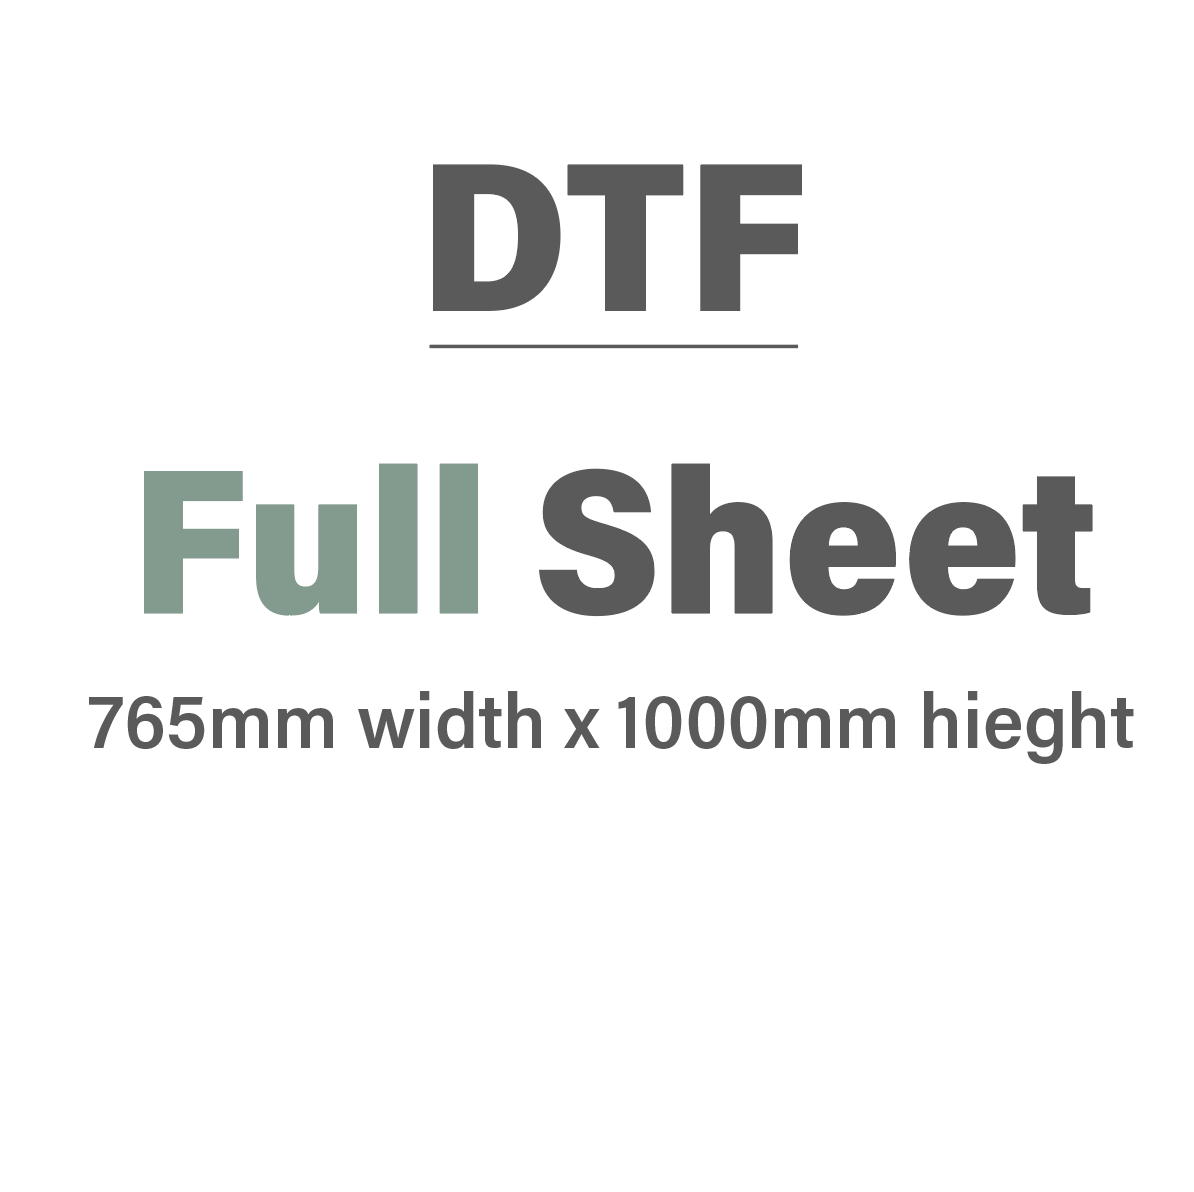 
                  
                    DTF Gangsheet 1000mm x 765mm
                  
                